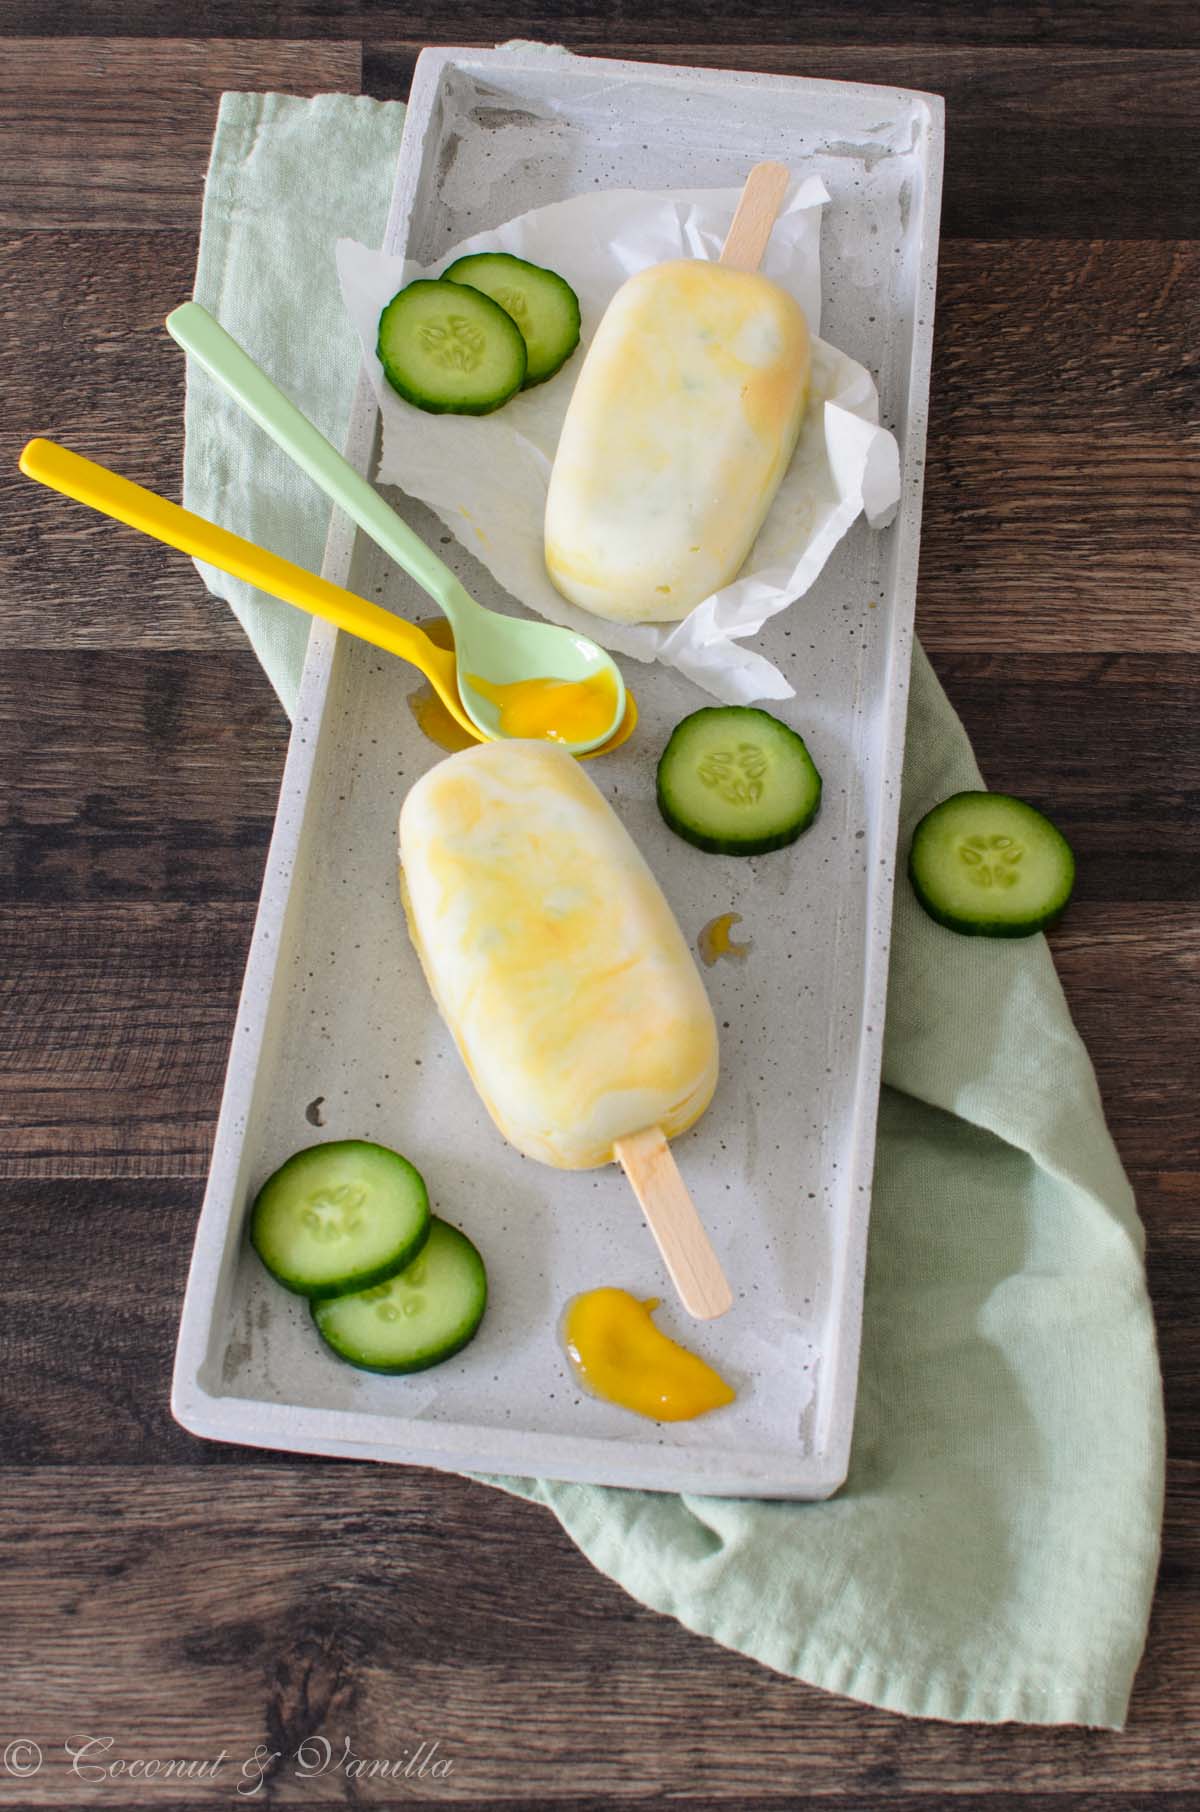 <!--:de-->Joghurt-Gurken Ice Pops mit Mango<!--:--><!--:en-->Yogurt-Cucumber Ice Pops with Mango<!--:-->